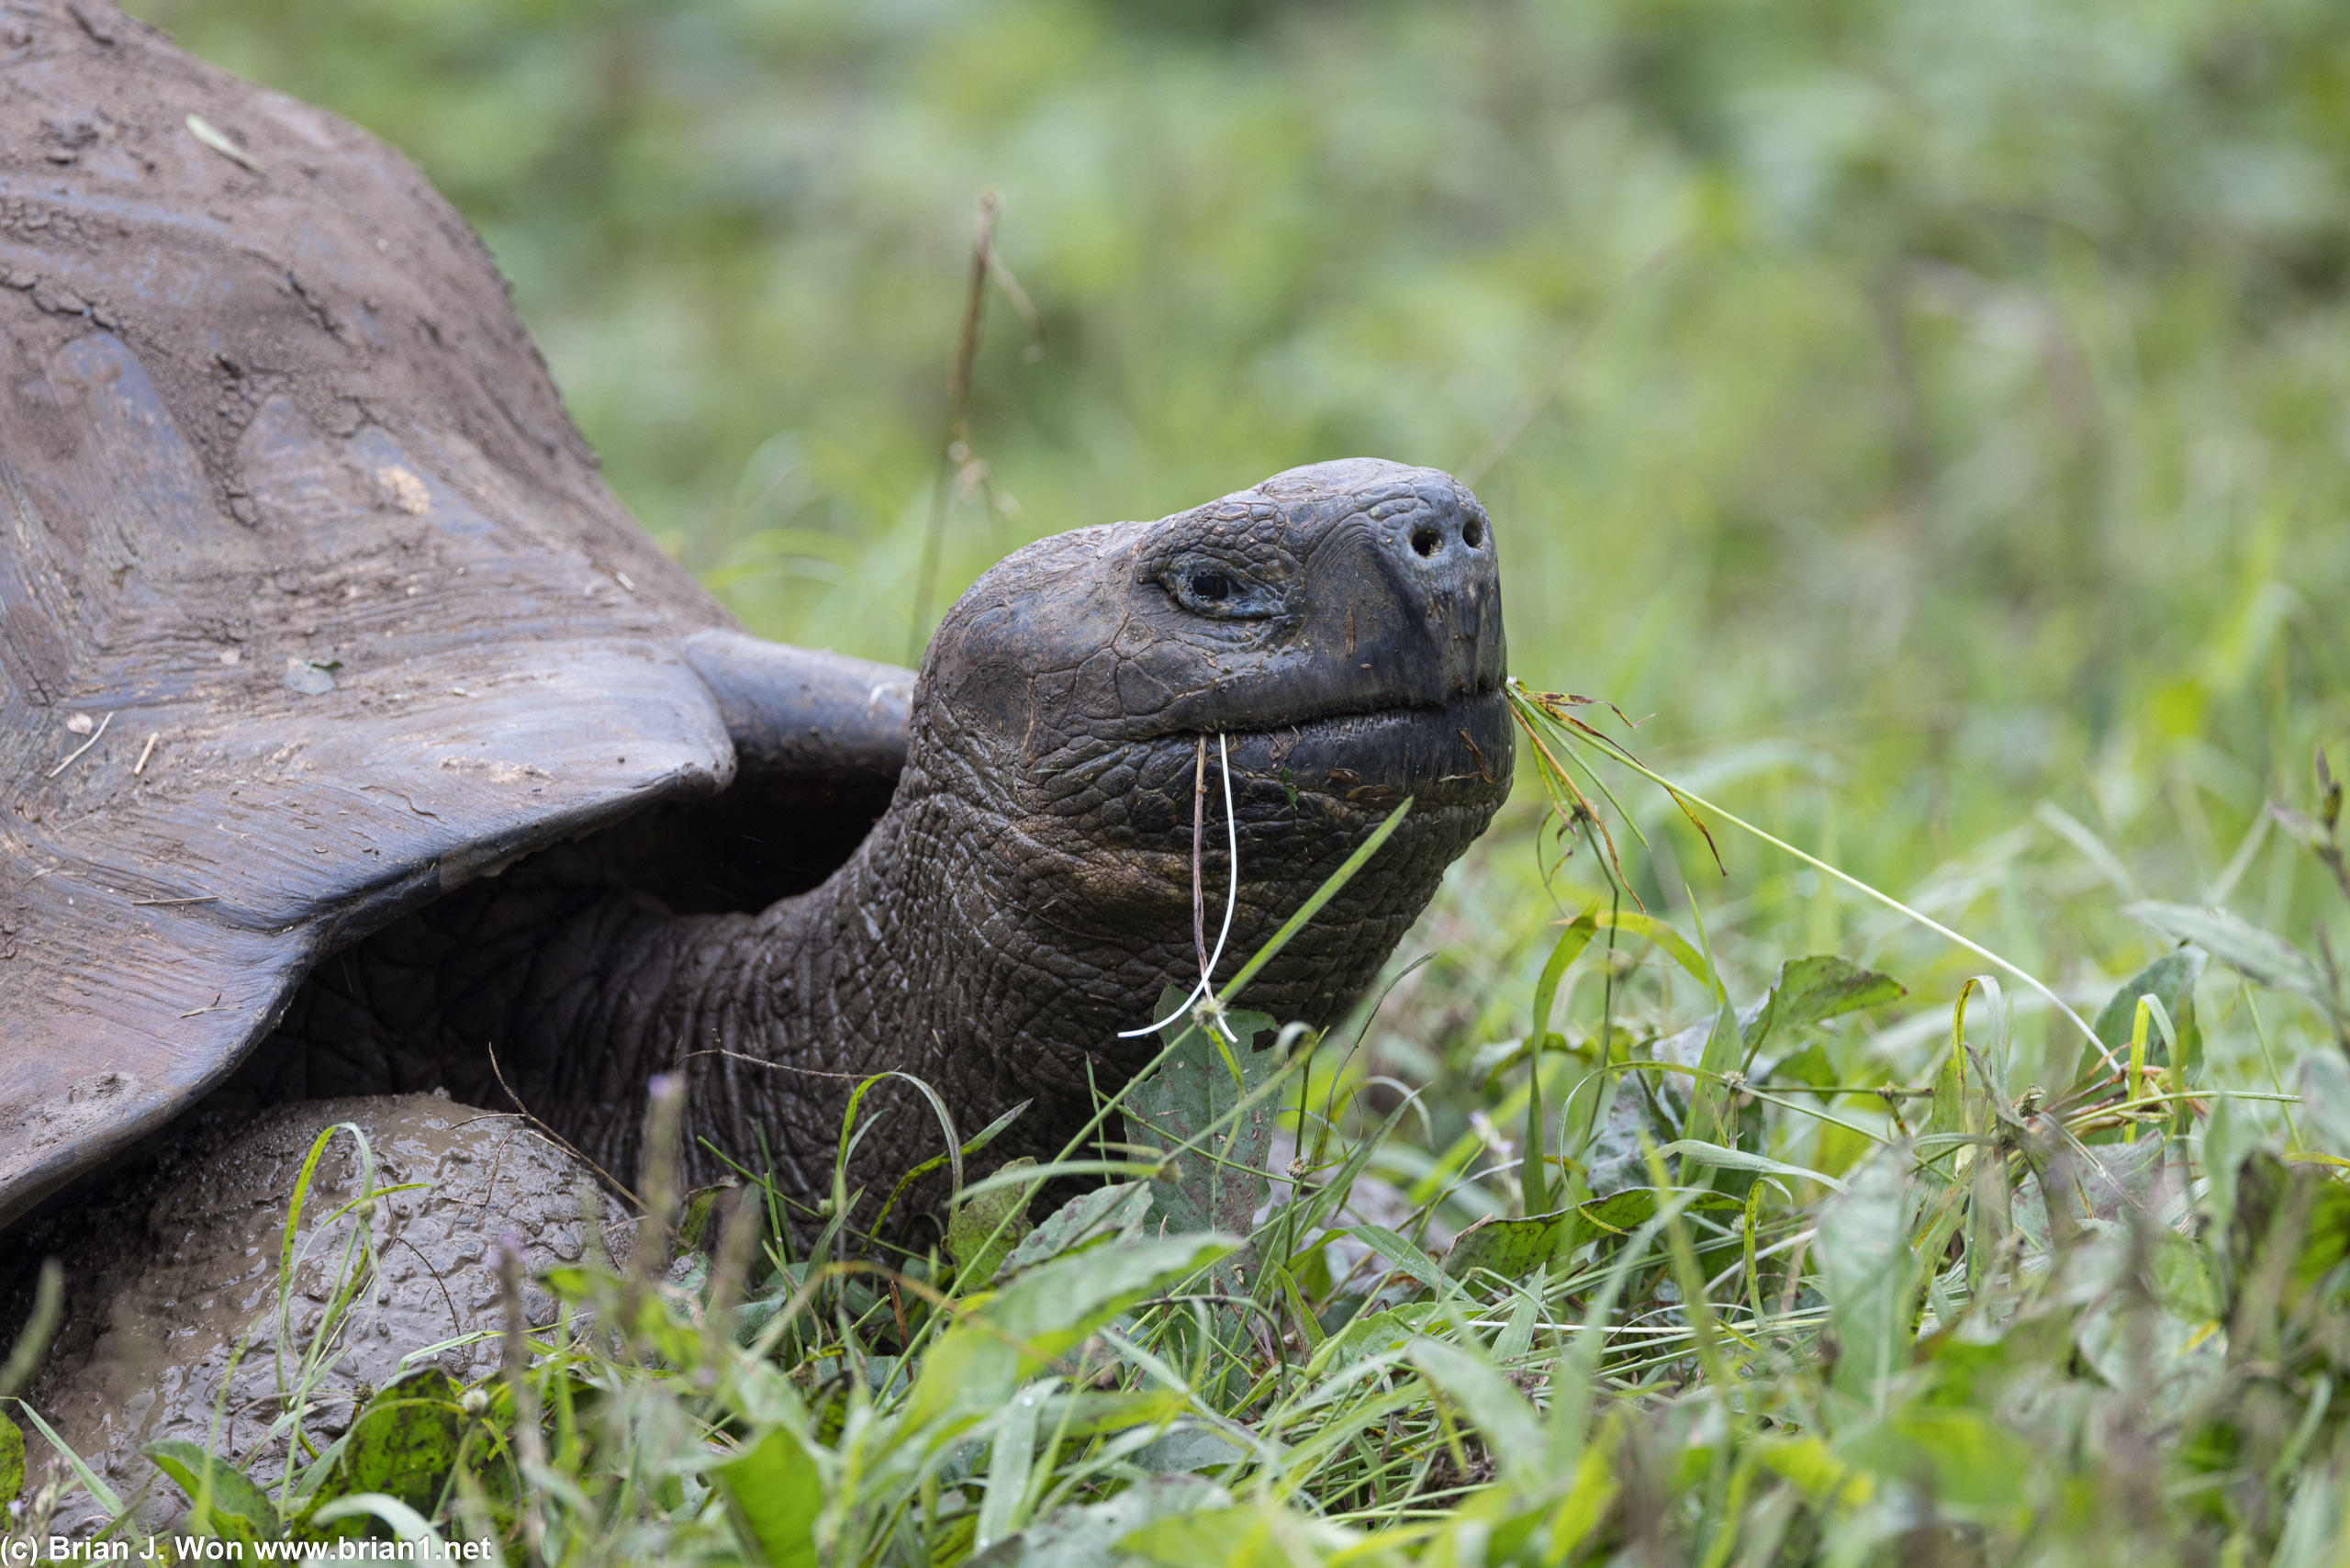 Santa Cruz island giant tortoise.